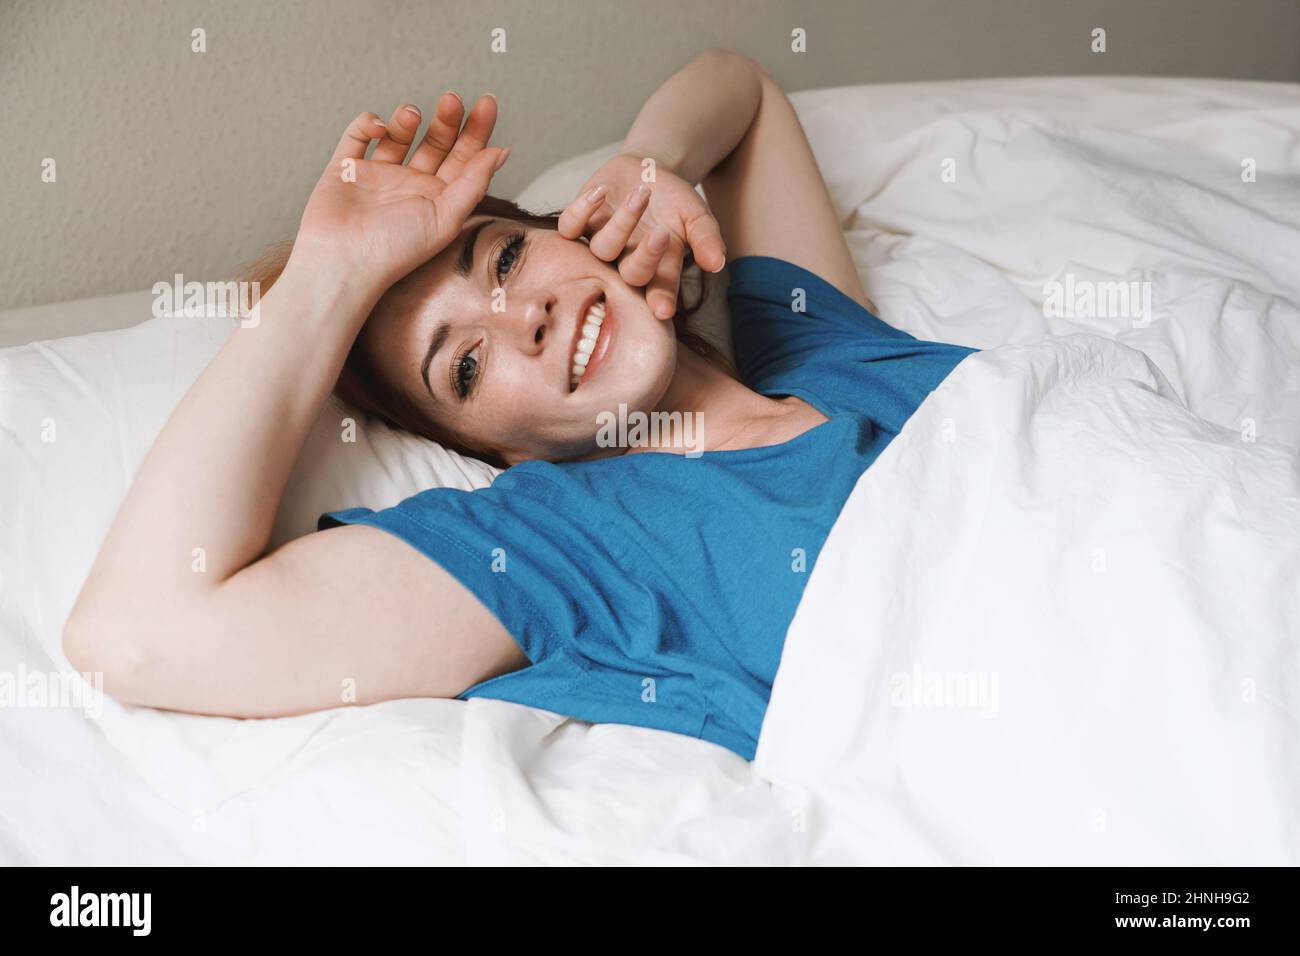 Steh auf und glänze - ausgerustete junge Frau im Bett wacht lächelnd auf Stockfoto